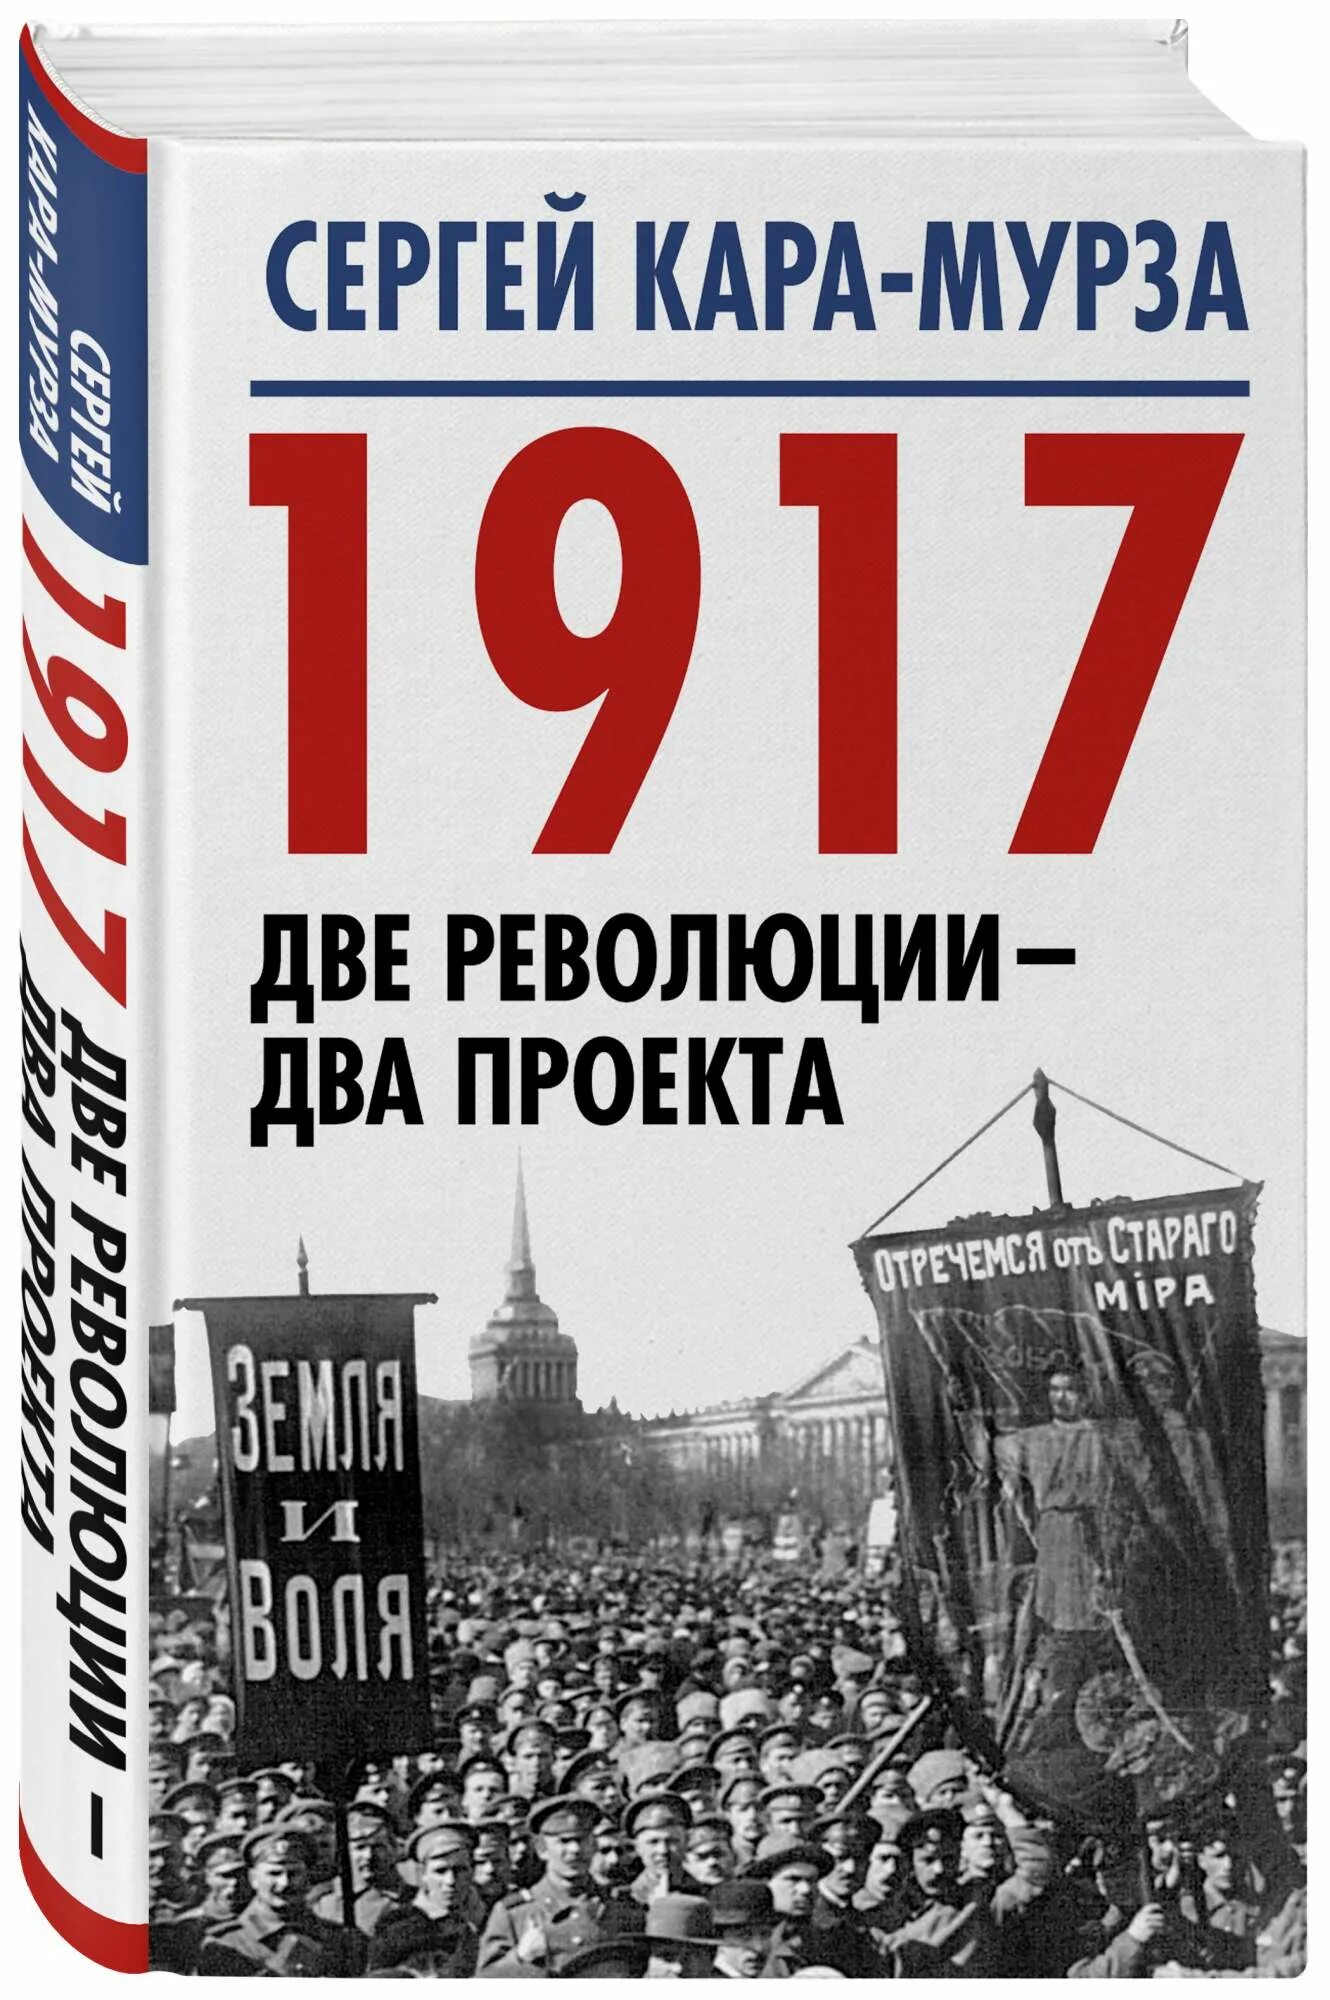 Две революции 1917. Книга 1917 года. Две революции книга. Революция 2 12